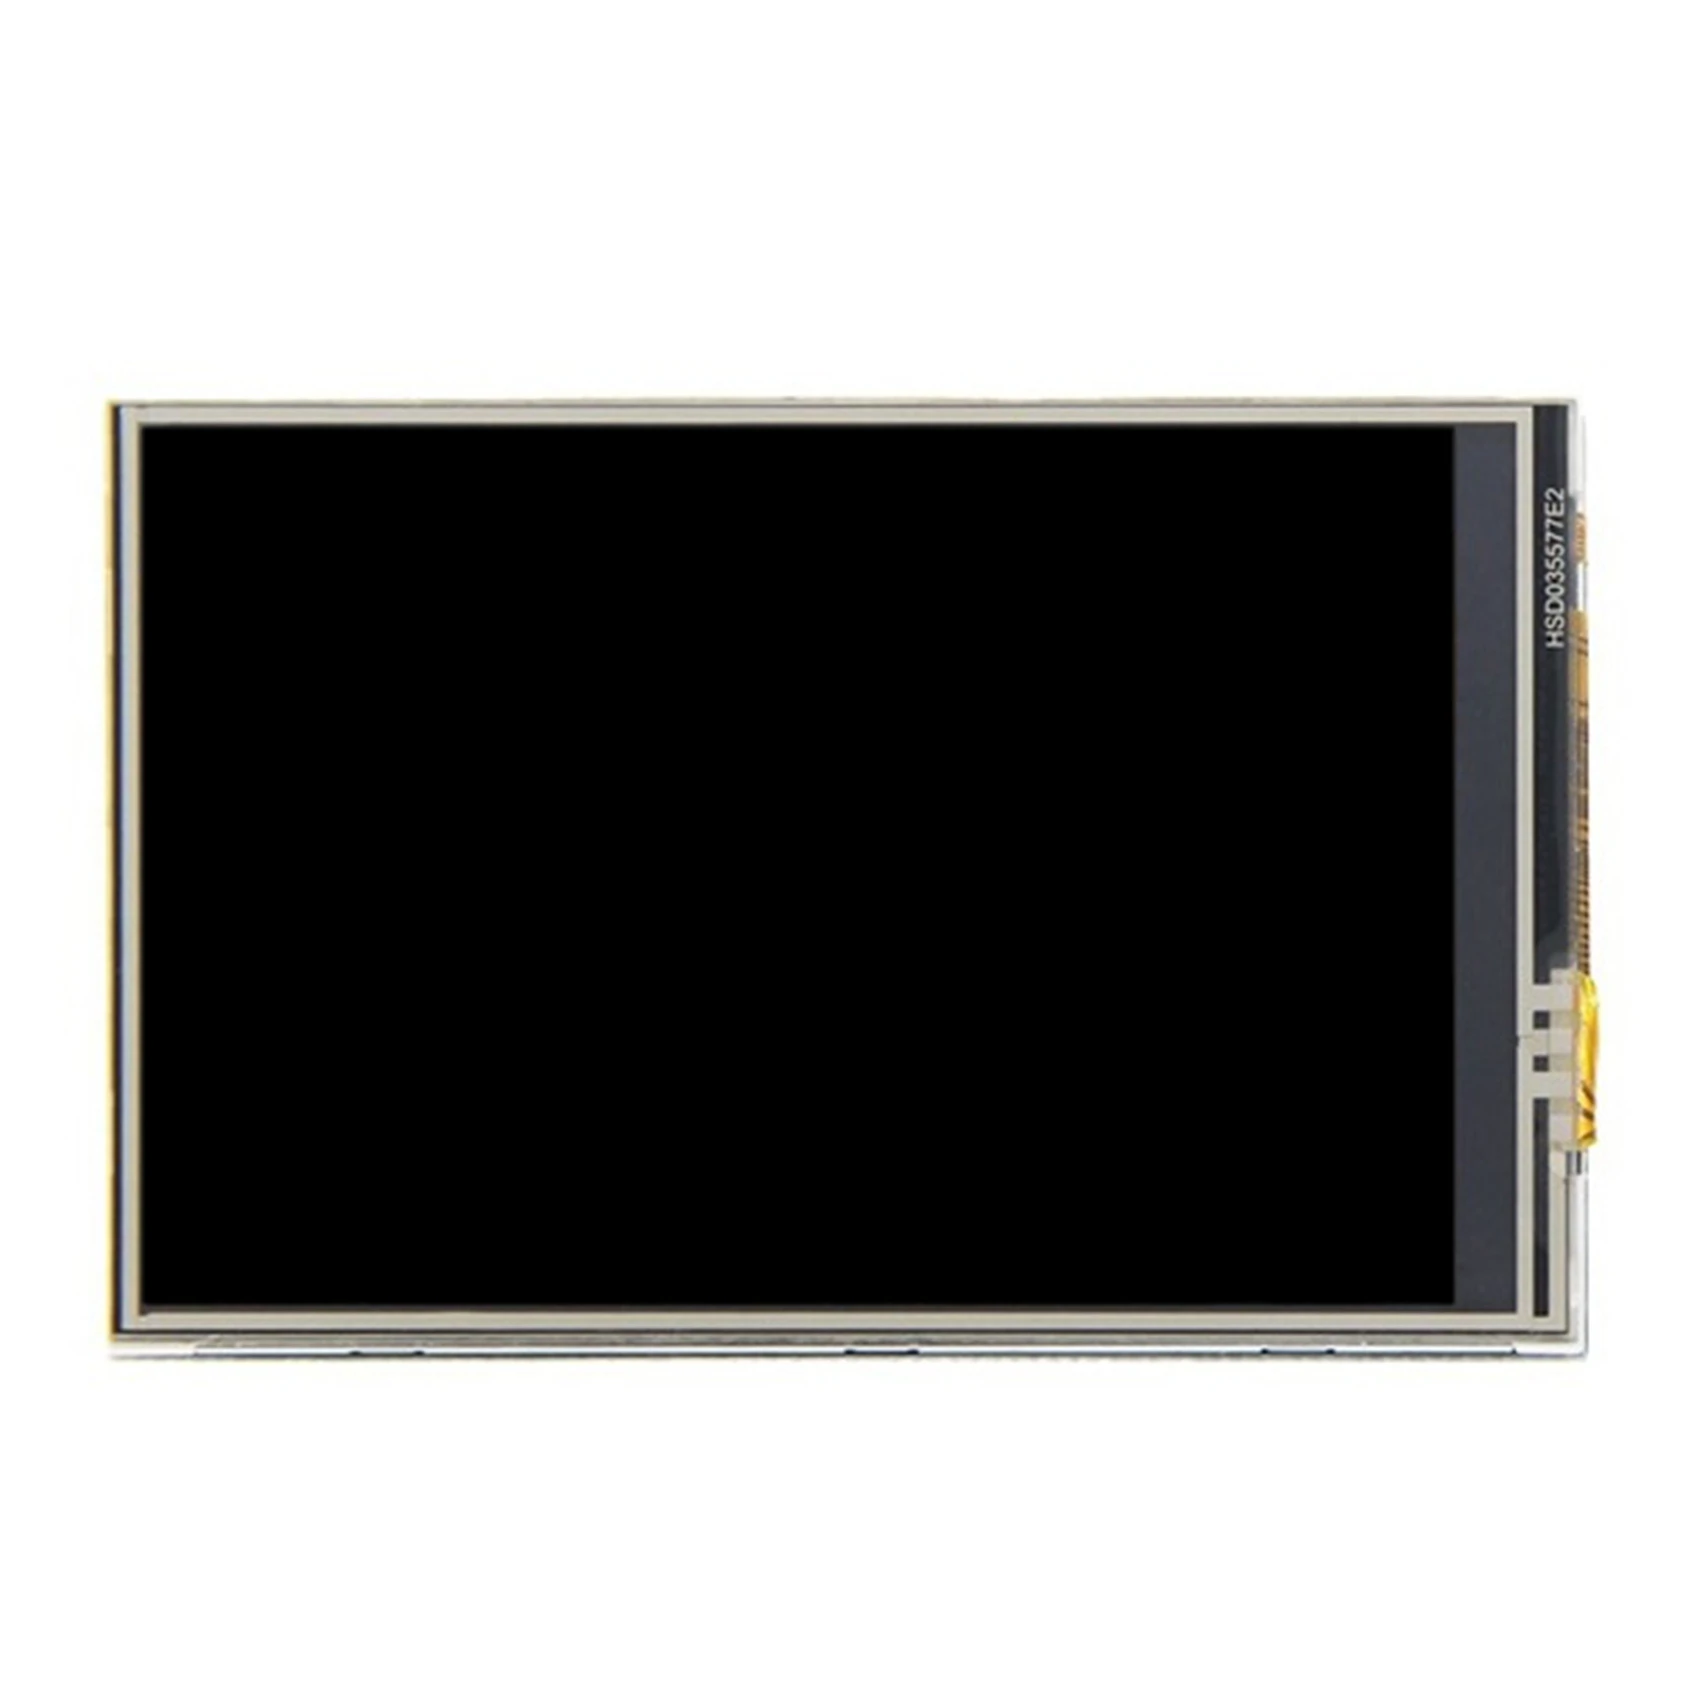 

Цветной TFT ЖК-экран 3,5 дюйма, x, дисплей с сенсорным экраном, модуль ЖК-экрана для Raspberry 4 поколения 3B +